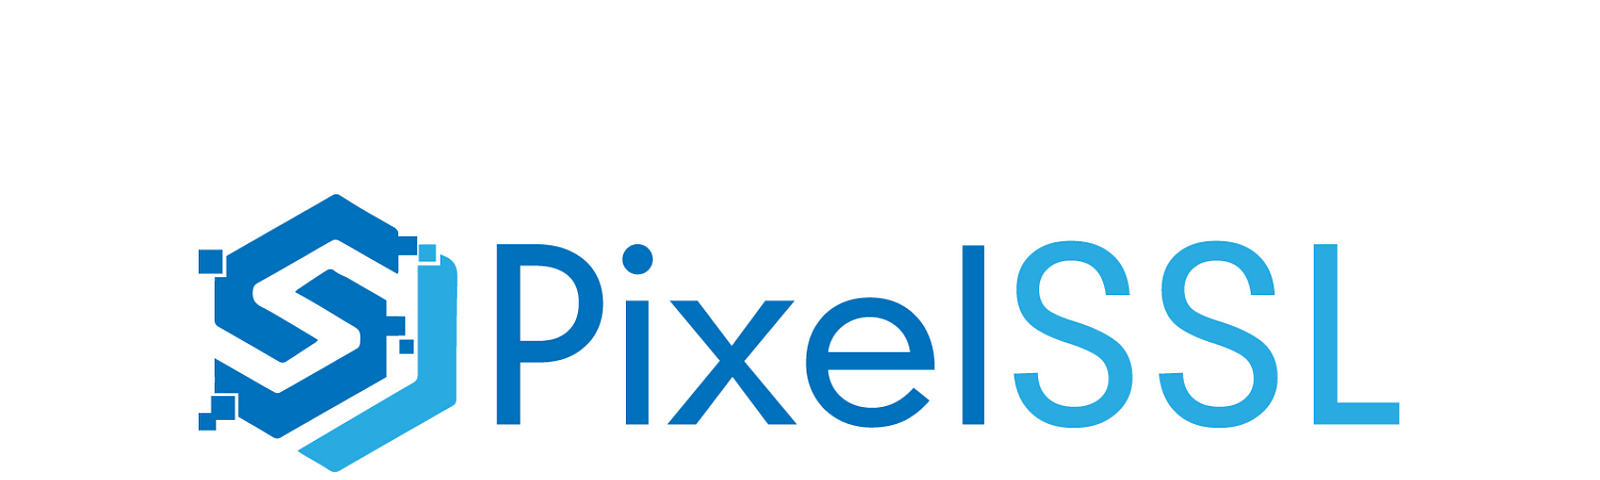 PixelSSL — Library For Pixel-Wise Computer Vision Tasks